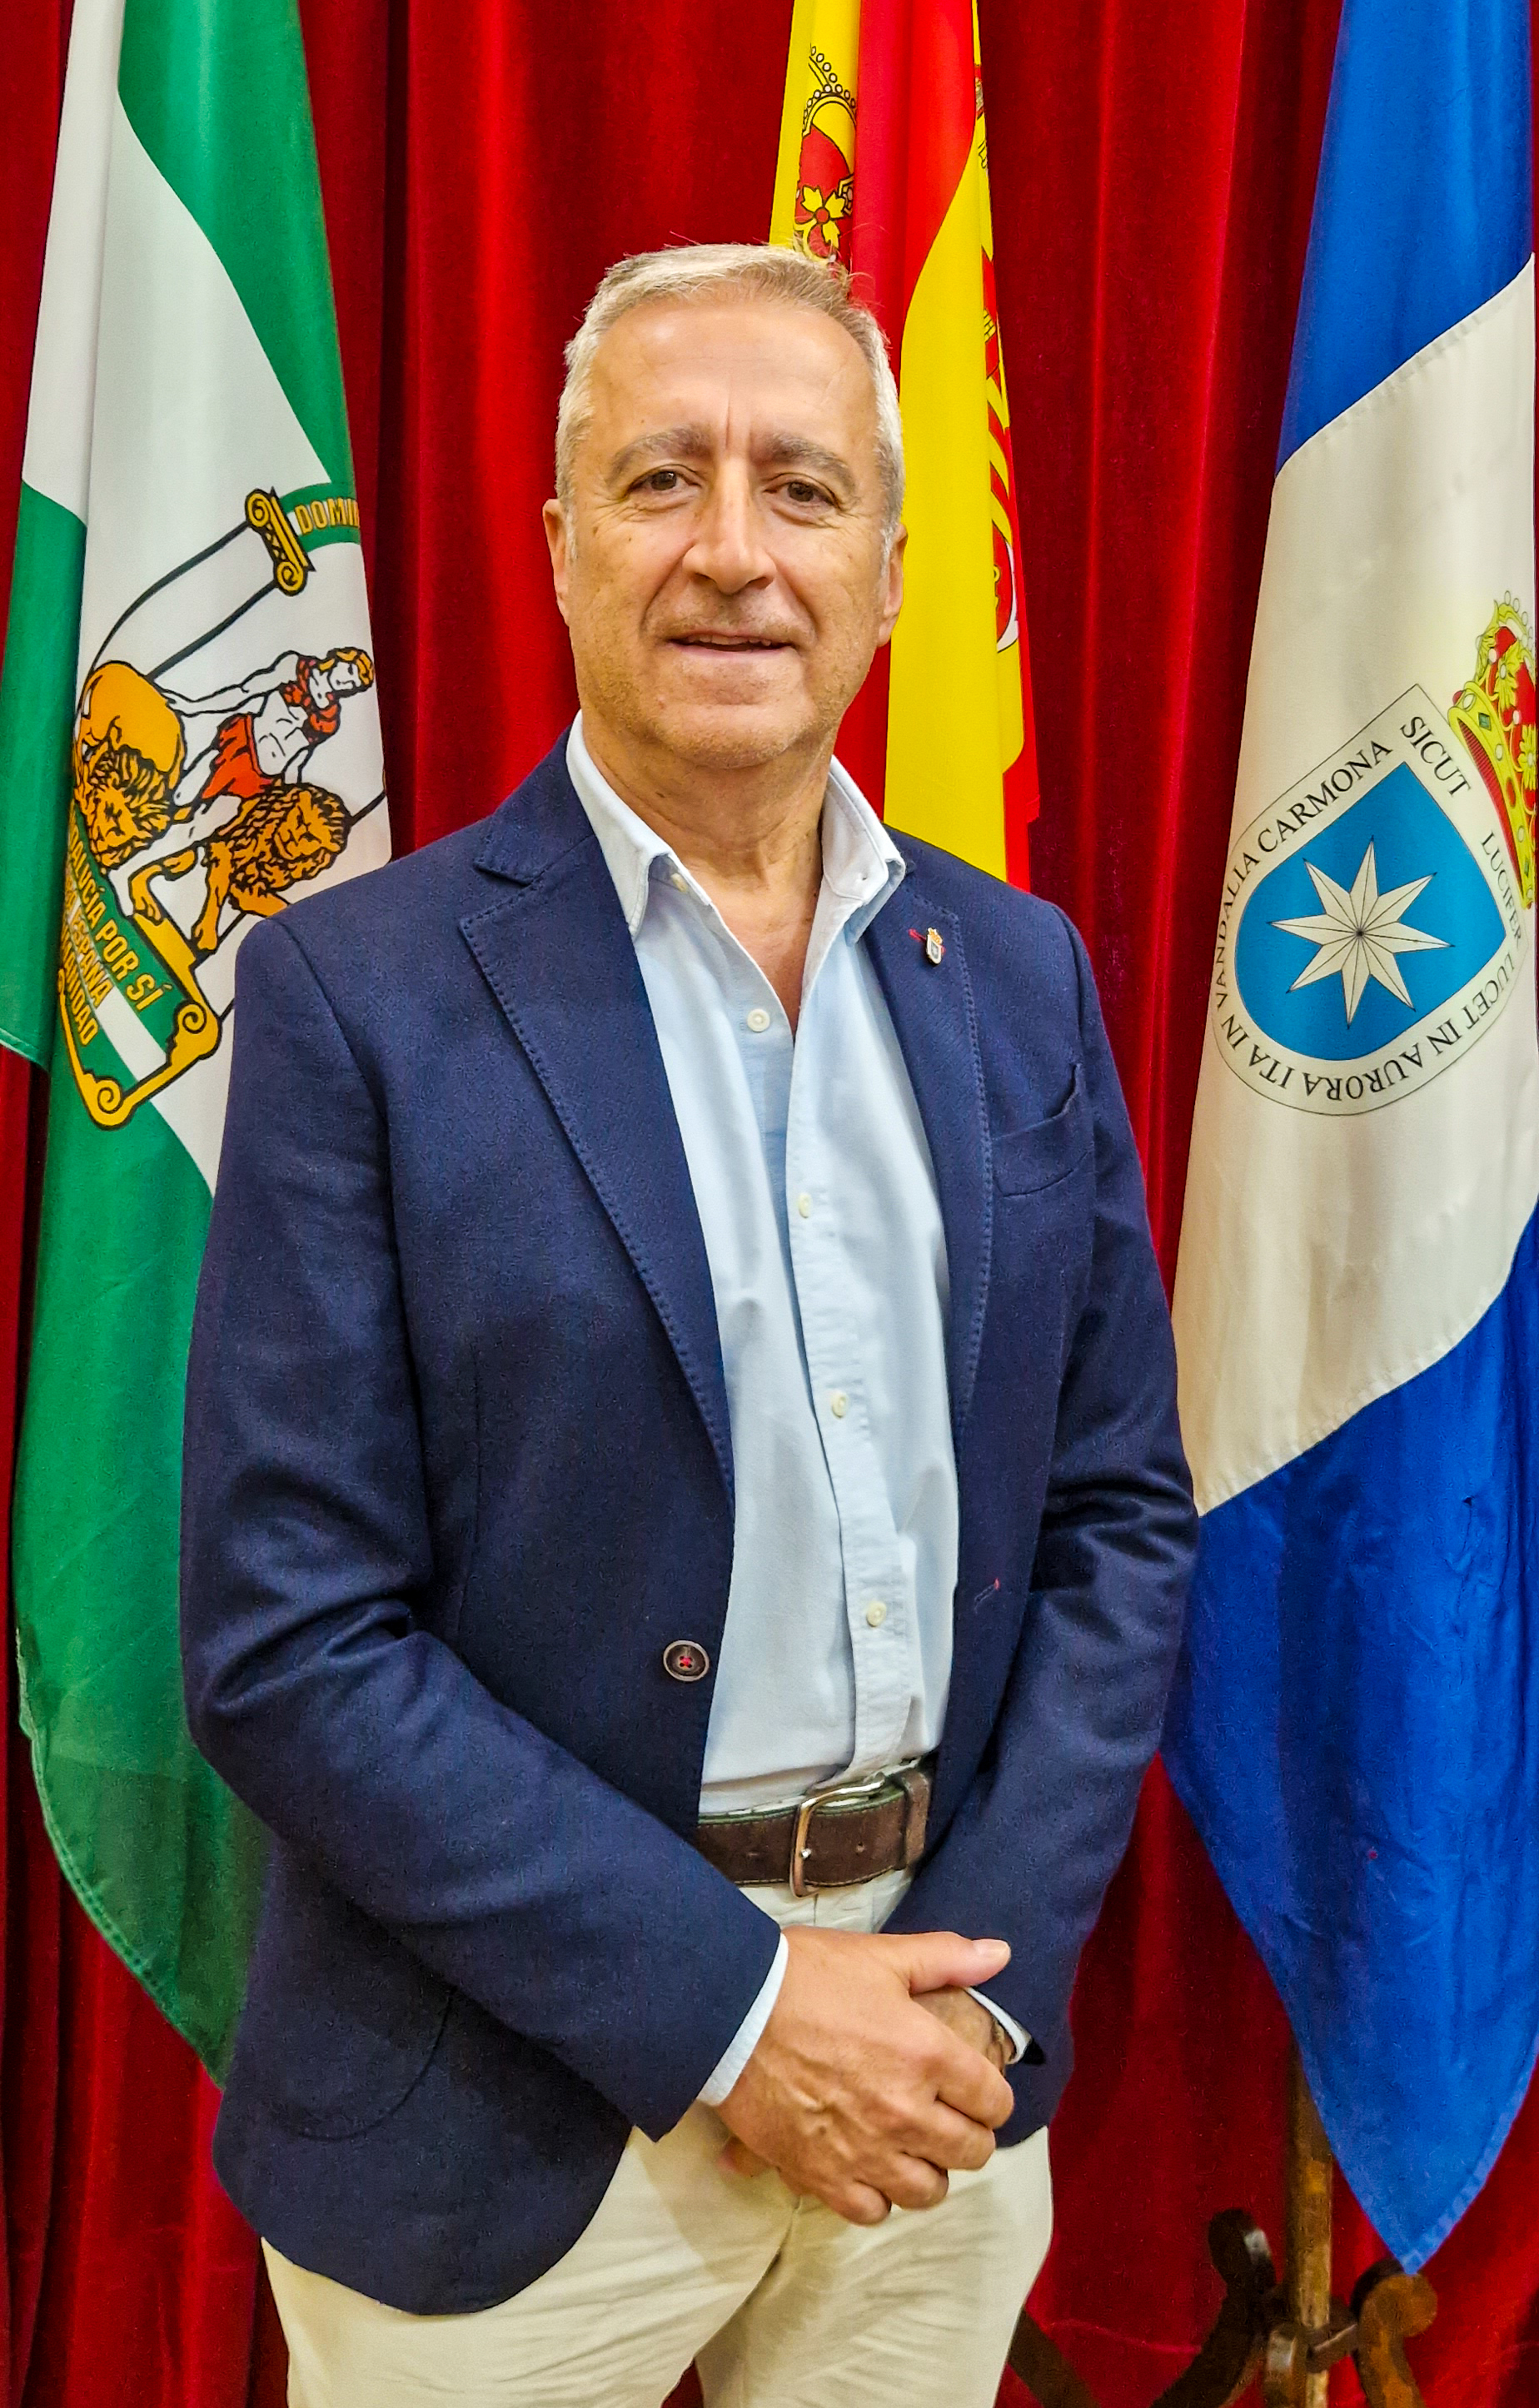 Enrique Manuel Becerra Gayoso. Quinto Teniente de Alcalde. Delegación de Salud, Consumo y Mayores